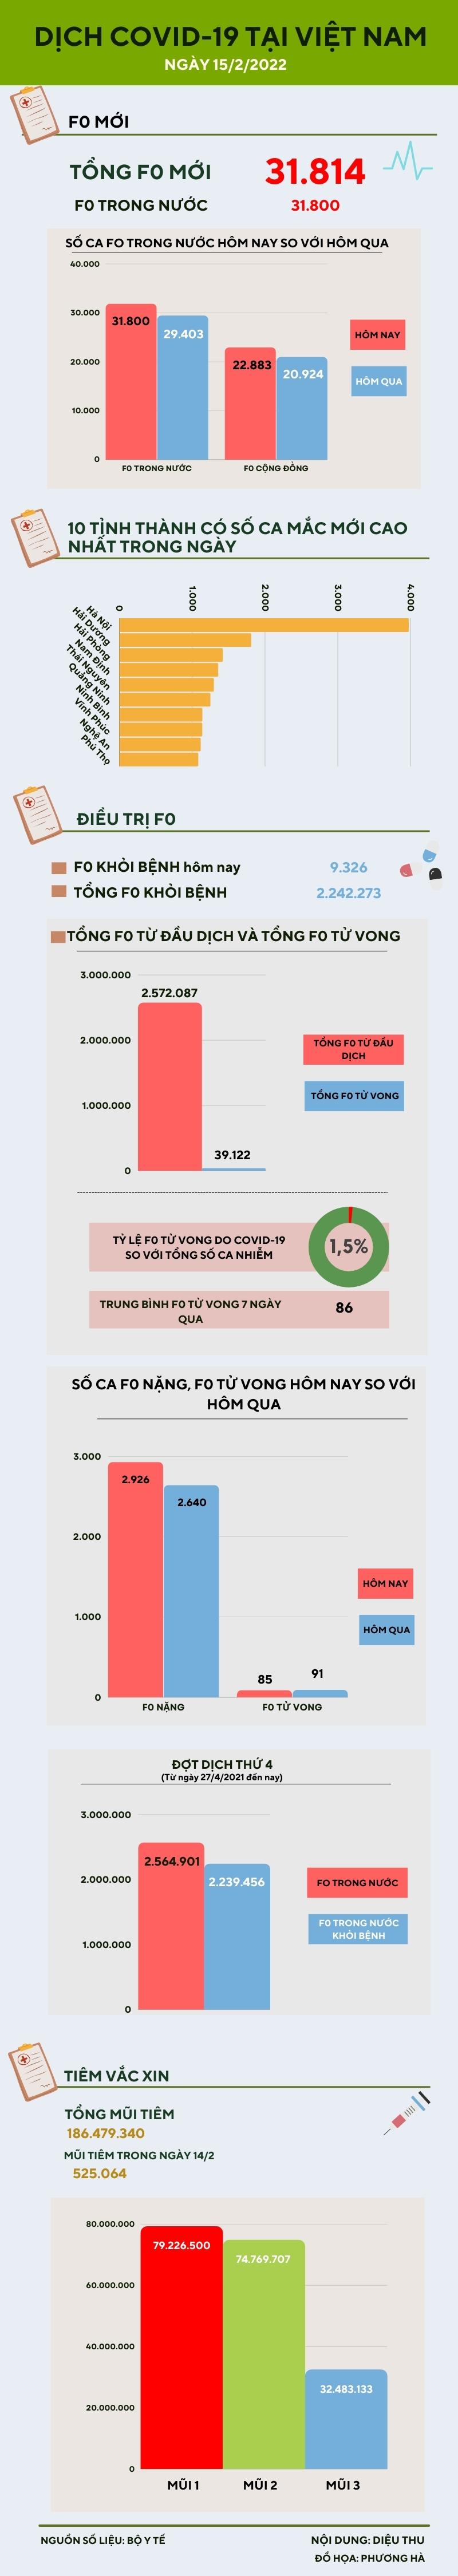 Ngày 15/2: Thêm 31.787 ca COVID-19 trong nước, riêng Hà Nội có 3.972 ca - 1